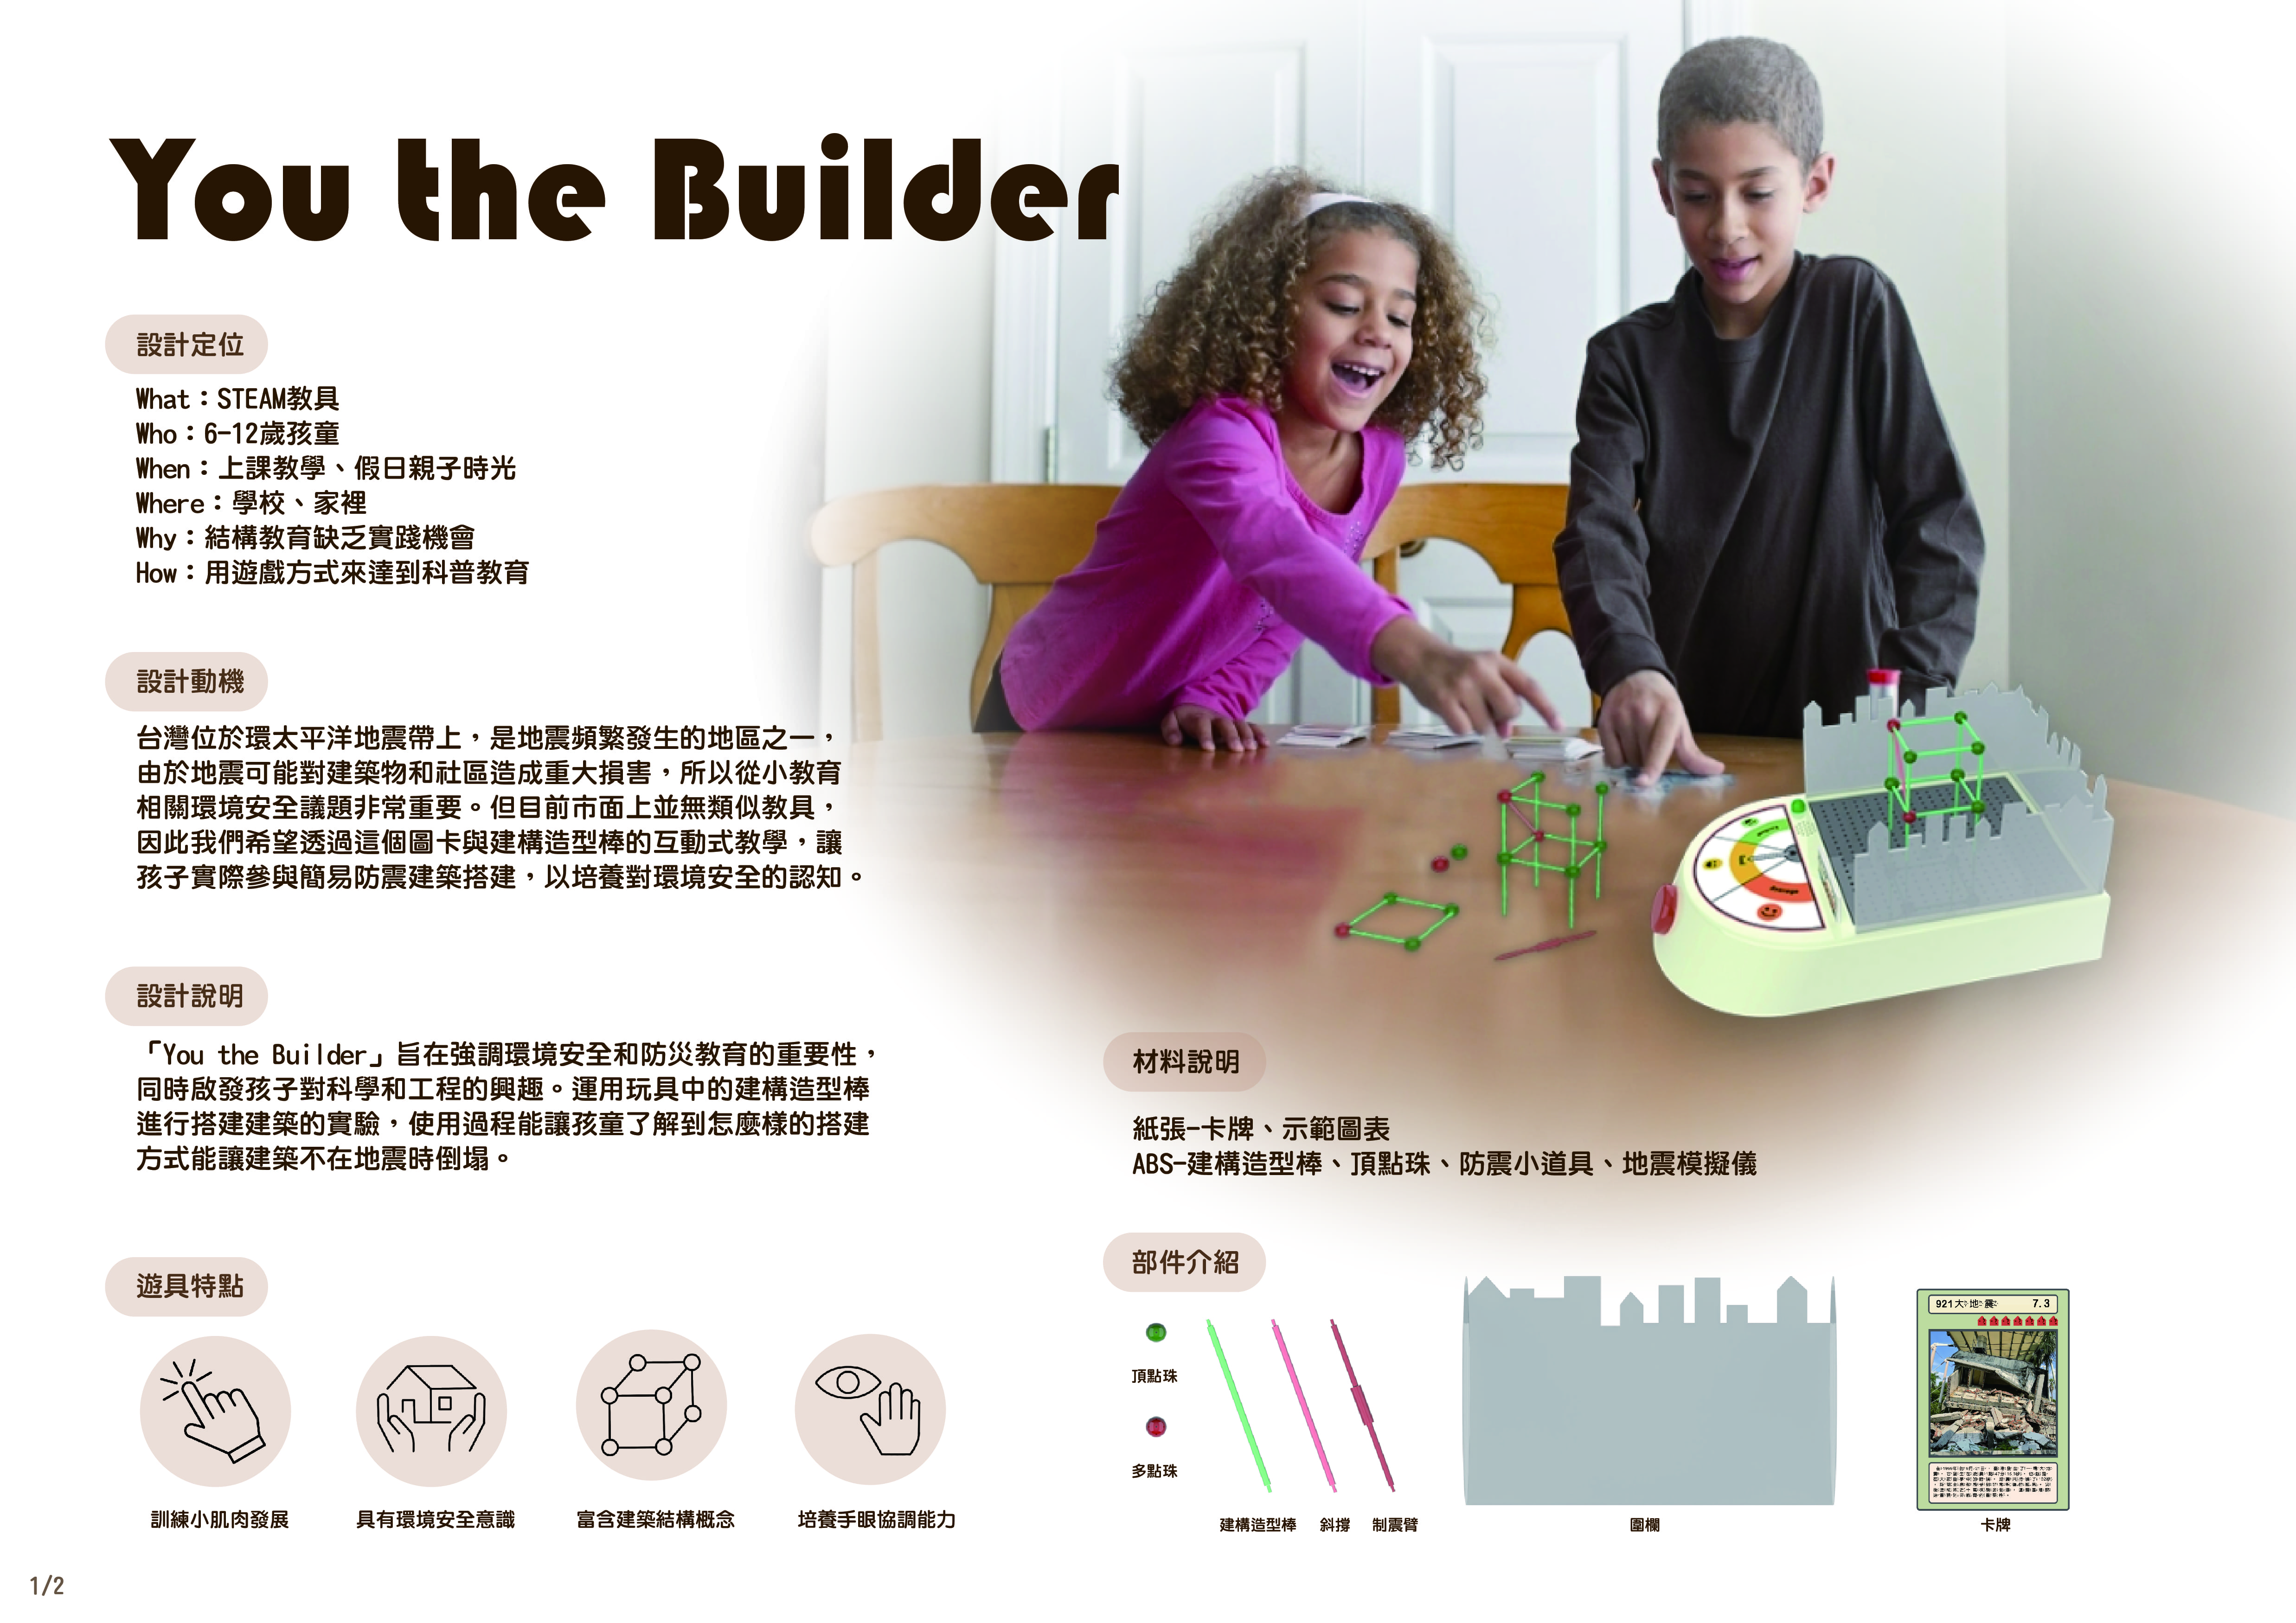 图为亚大商品系周侑萱、翁菀妤同学的「地震模拟建构棒 」作品，获「2024奇想设计大赛」佳作奖。